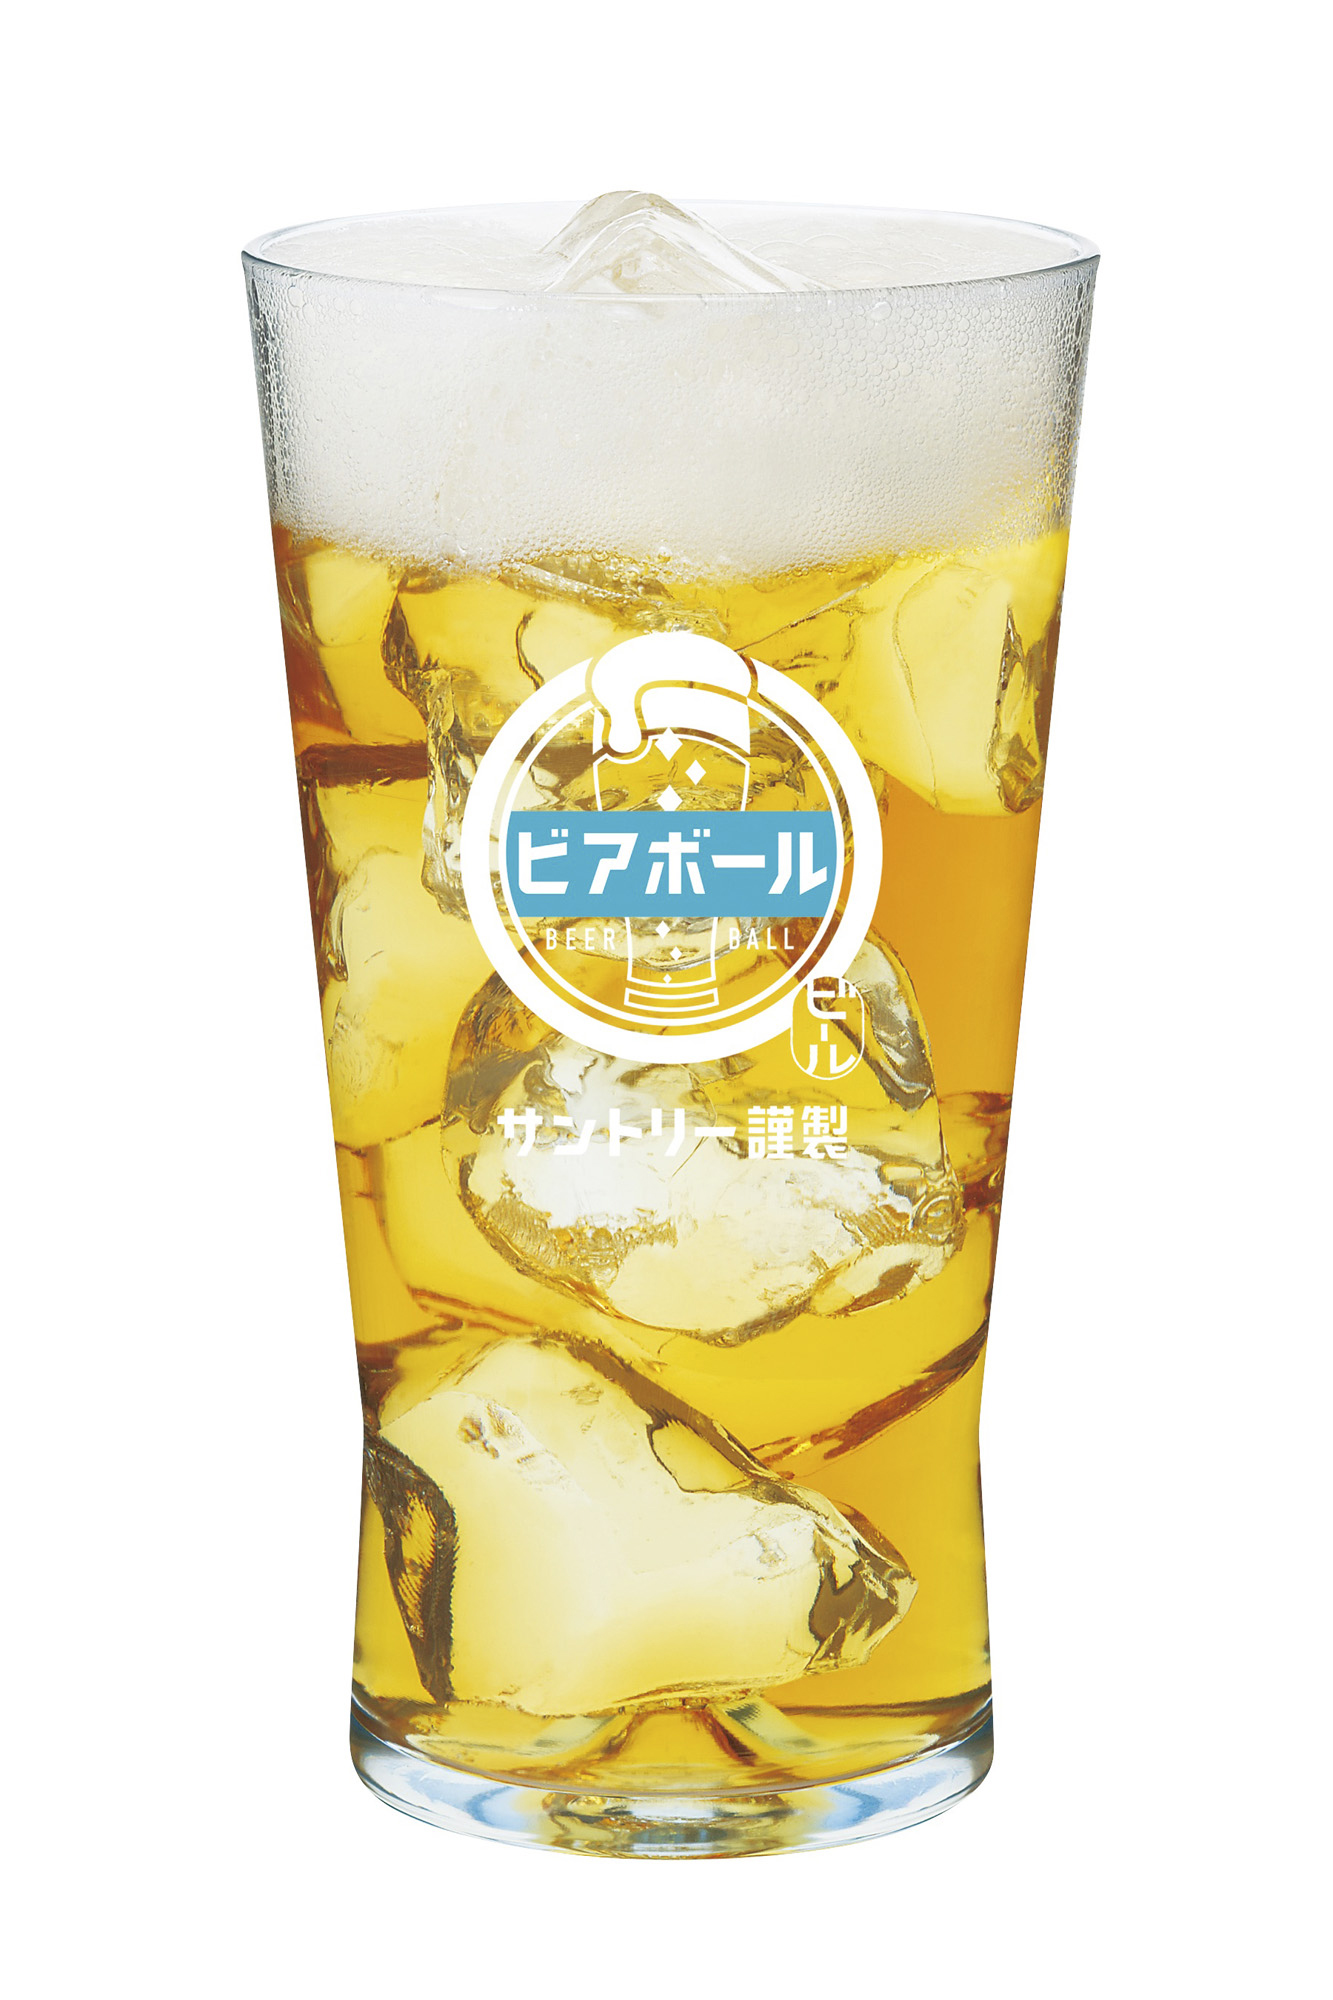 日本初(※1)の炭酸水でつくる自由なビール「ビアボール」誕生 2022年6月